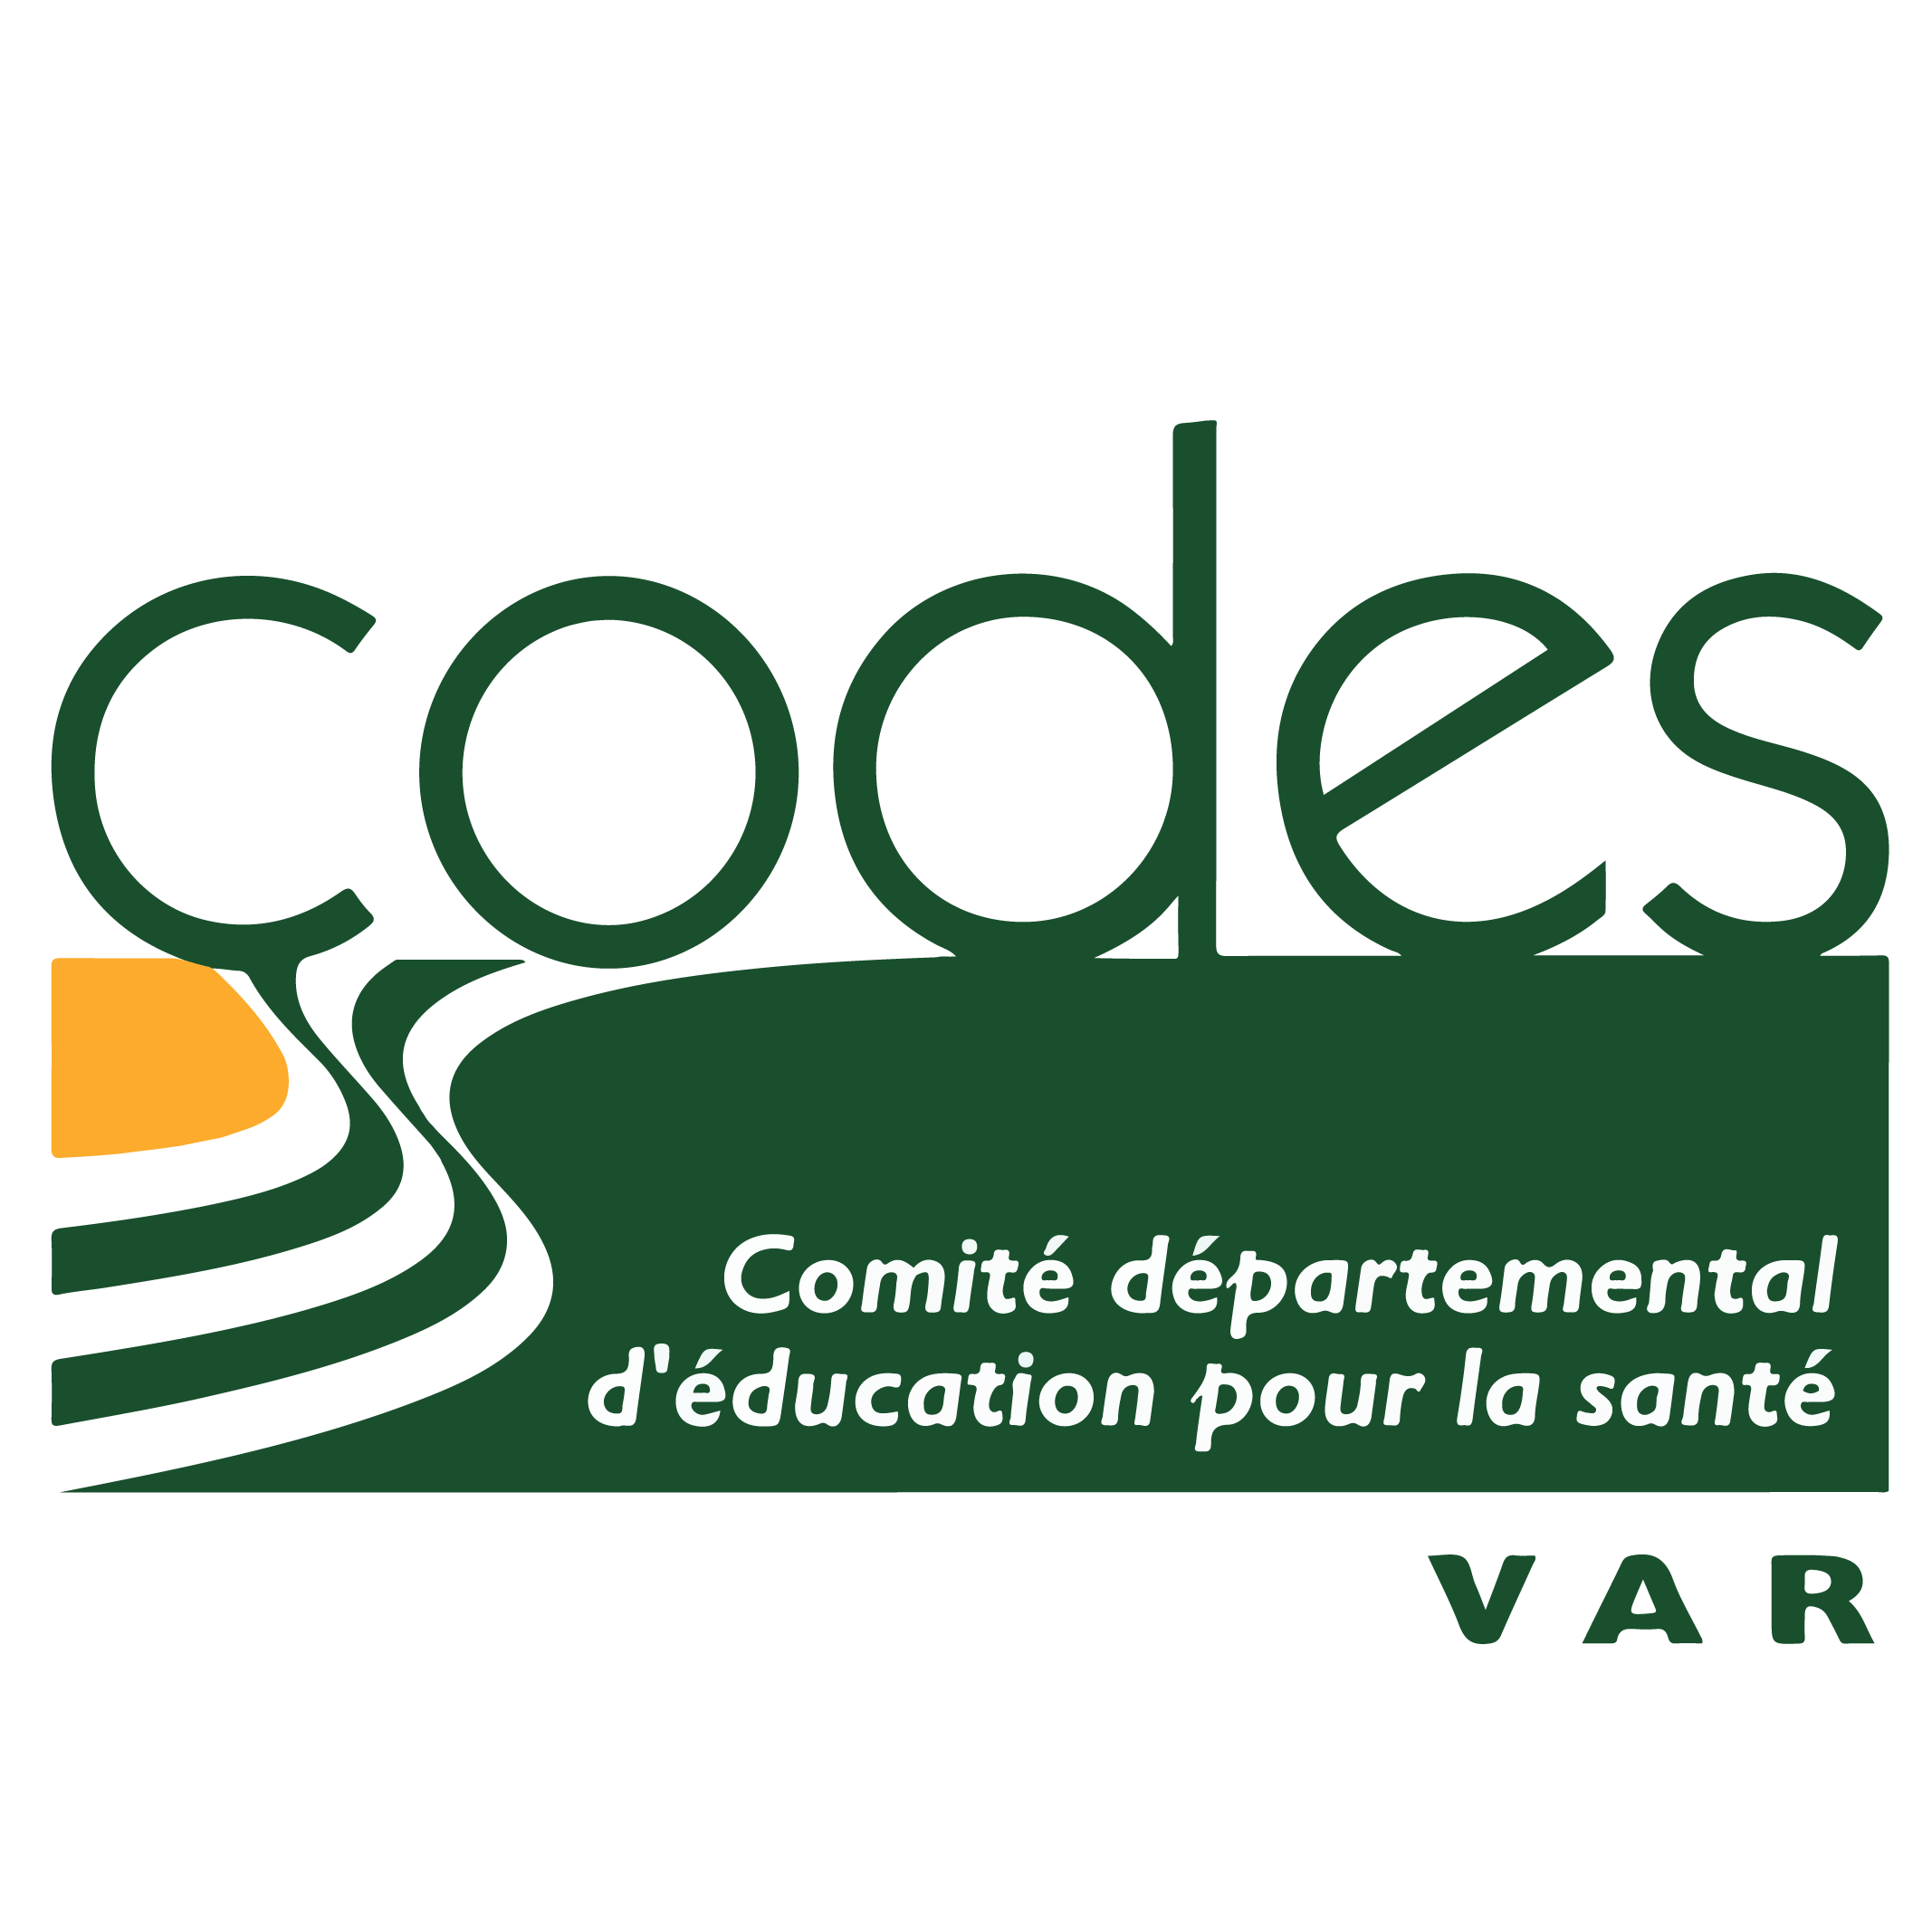 codes logo - PNG